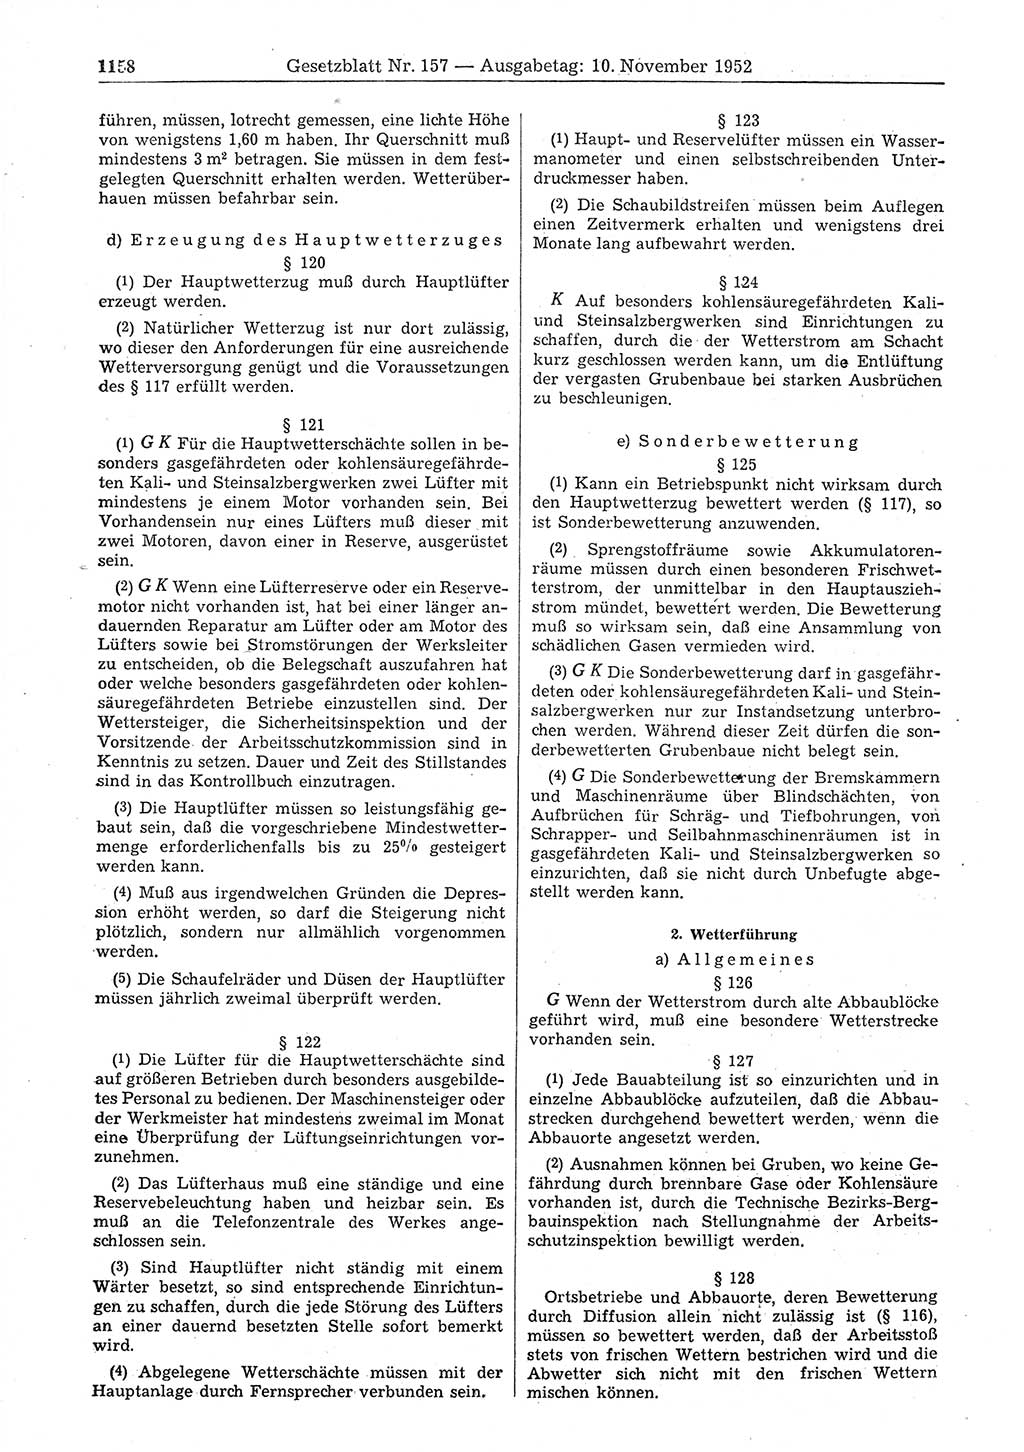 Gesetzblatt (GBl.) der Deutschen Demokratischen Republik (DDR) 1952, Seite 1158 (GBl. DDR 1952, S. 1158)